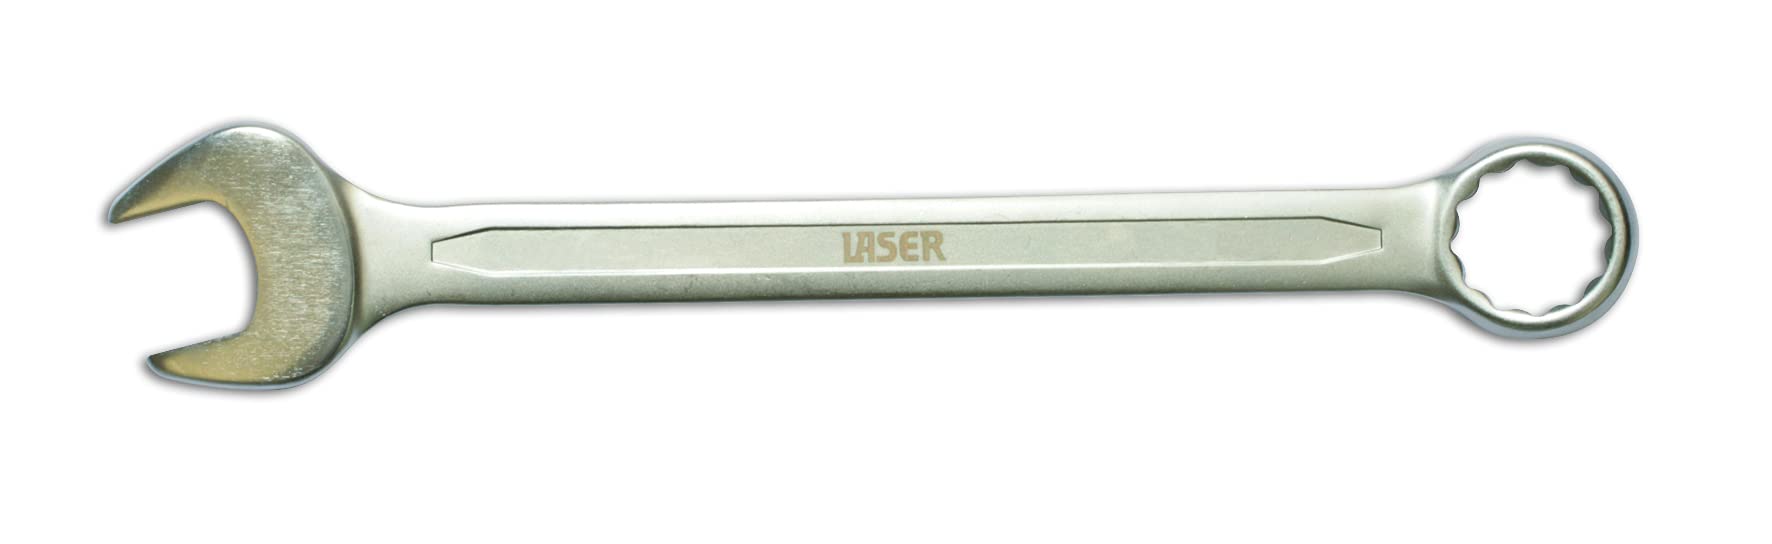 Laser 3056 Ringmaulschlüssel, von Laser